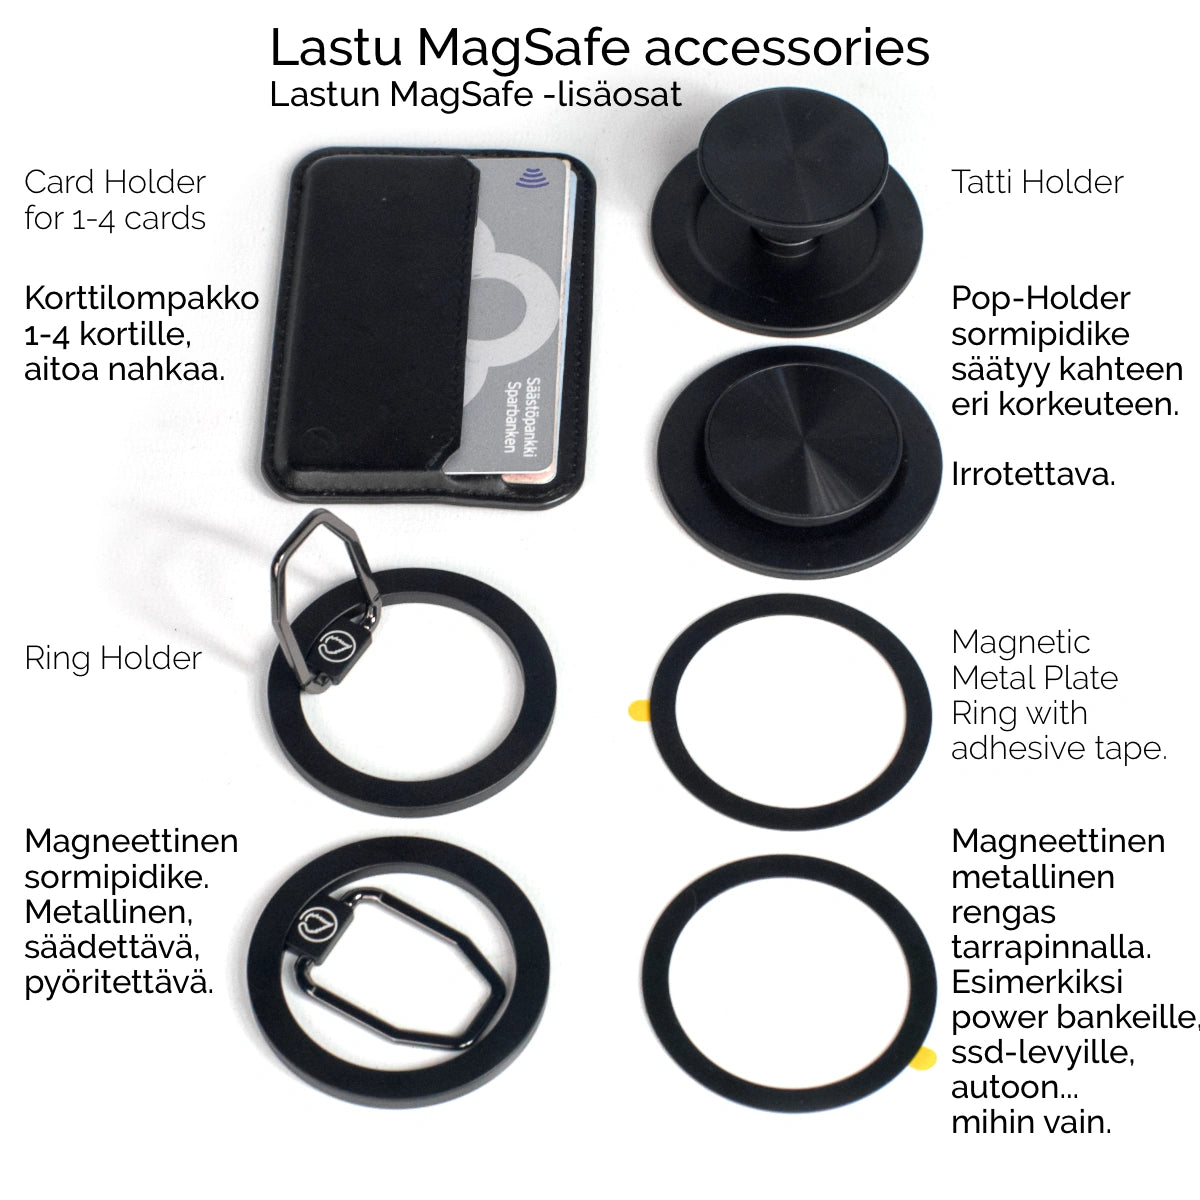 Musta MagSafe-kotelo aitoa pohjoismaista saarnipuuta ja kestävää muovia. Magneetit pitävät lisäosat paikallaan. Valitse puhelinmalli ja lisää magneettiset tarvikkeet tilaukseesi.